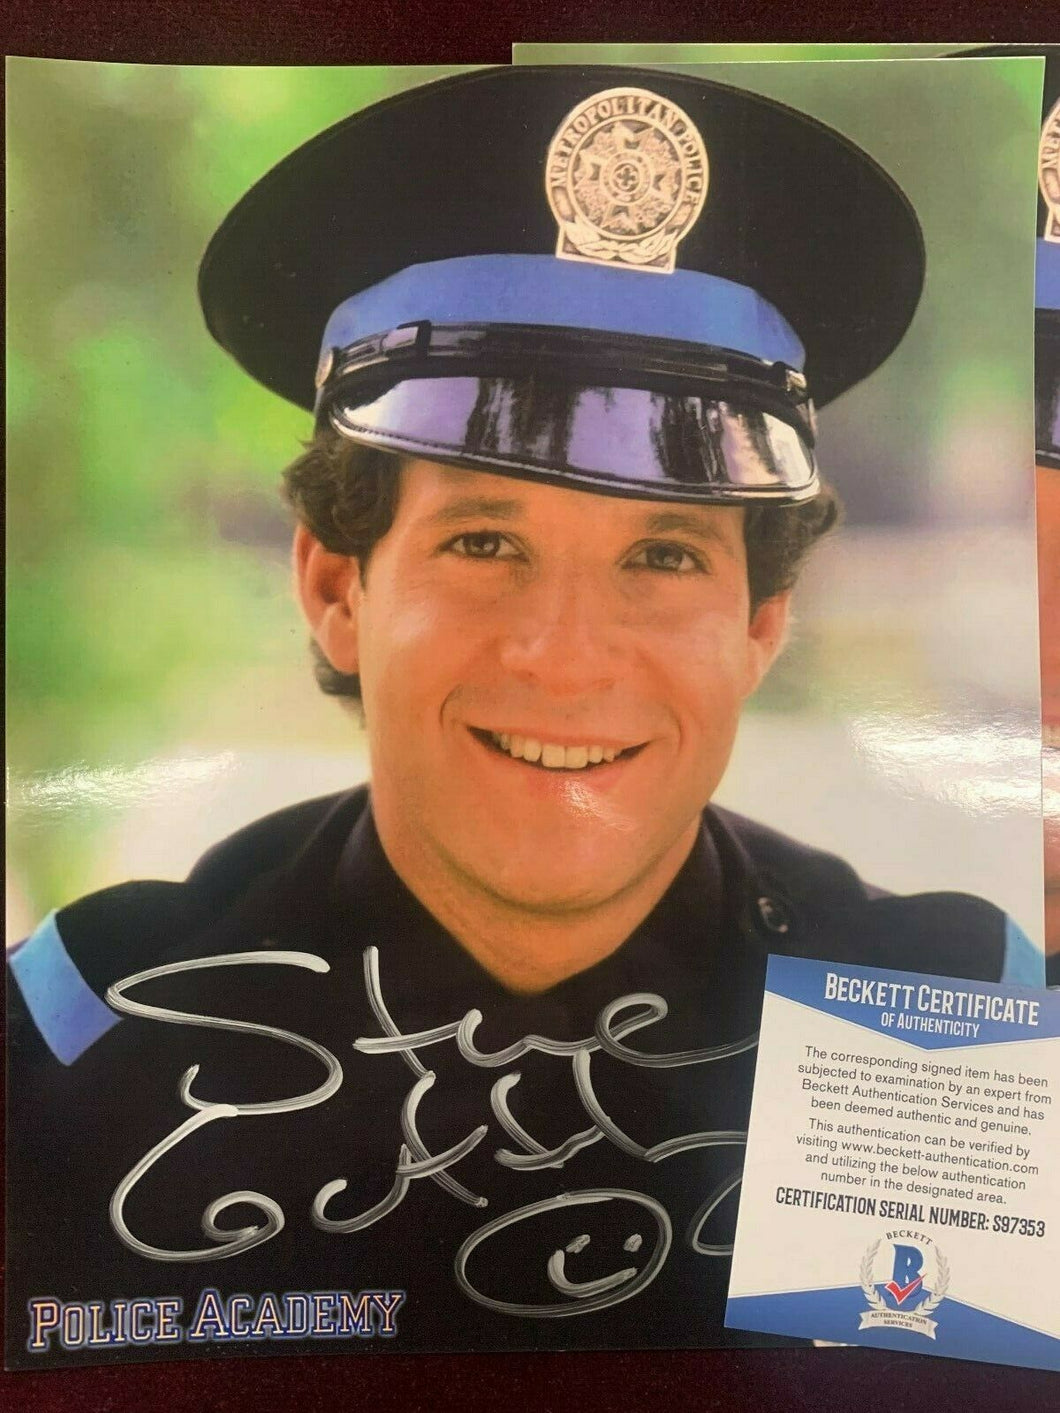 Steve Guttenberg Hand Signed 8x10 Photo Beckett COA Police Academy